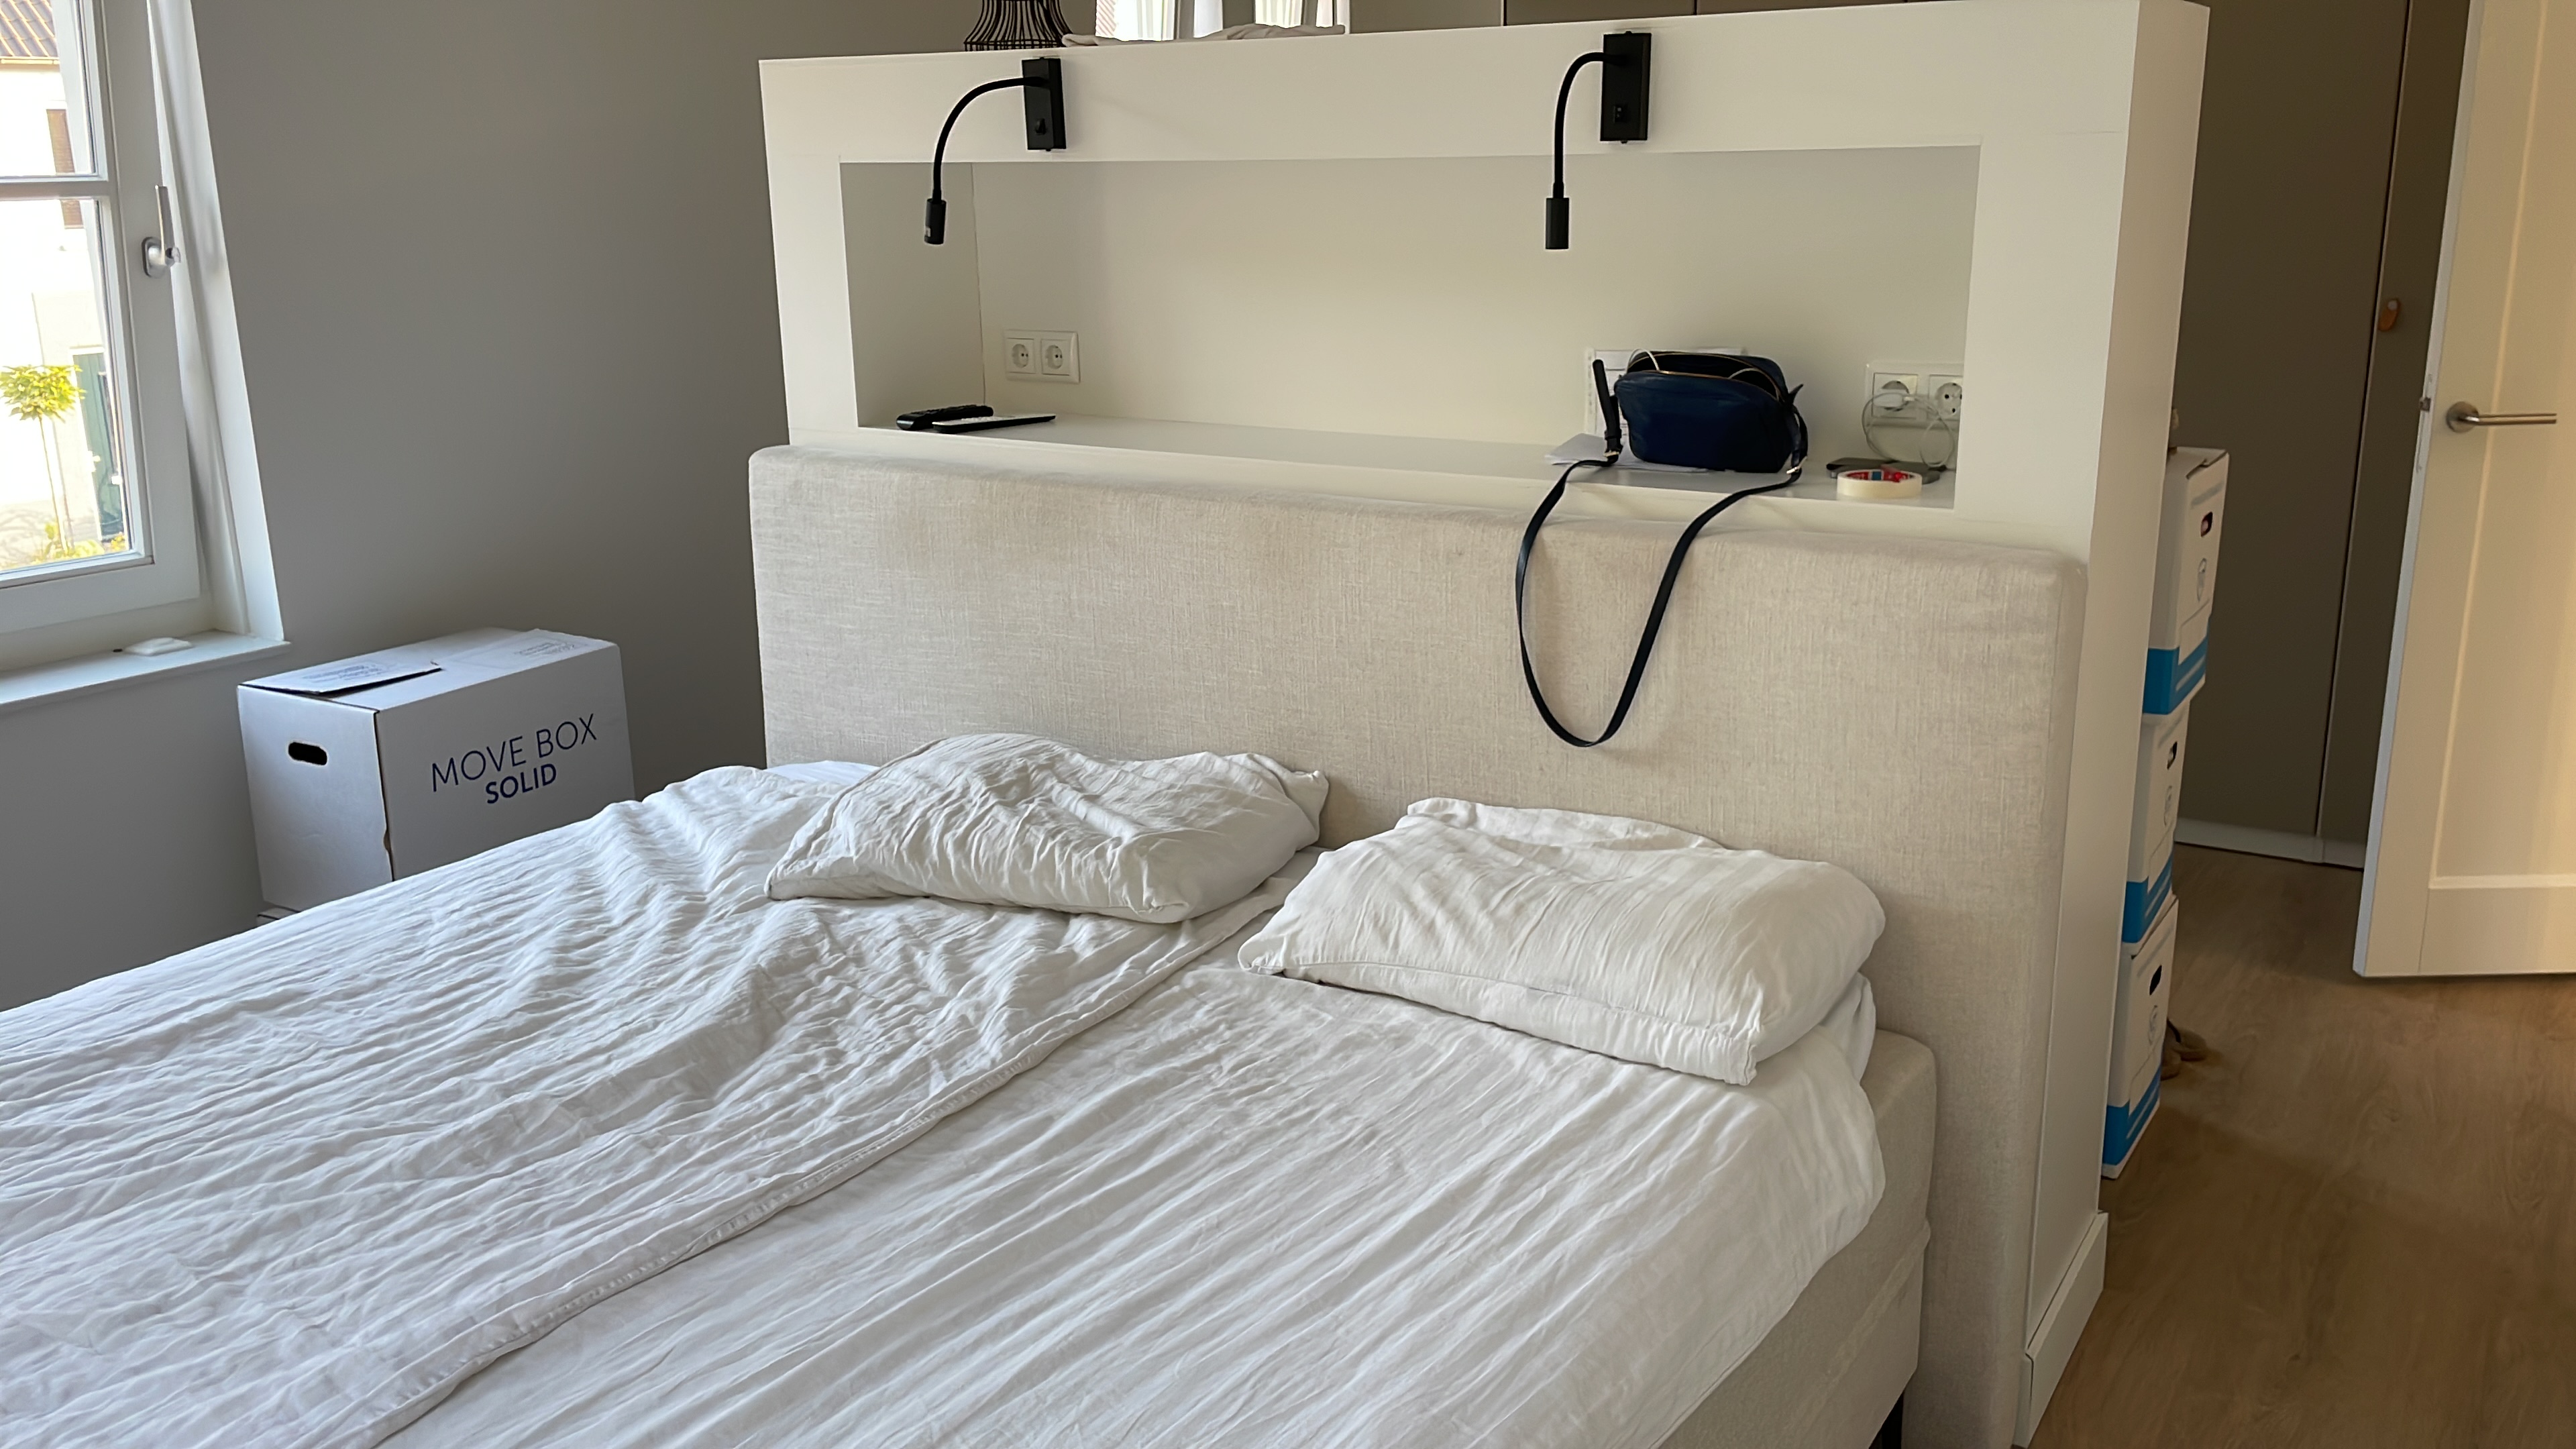 Huh Ontwarren vastleggen Zelf een roomdivider op maat maken voor in de slaapkamer - OPMAATZAGEN.nl